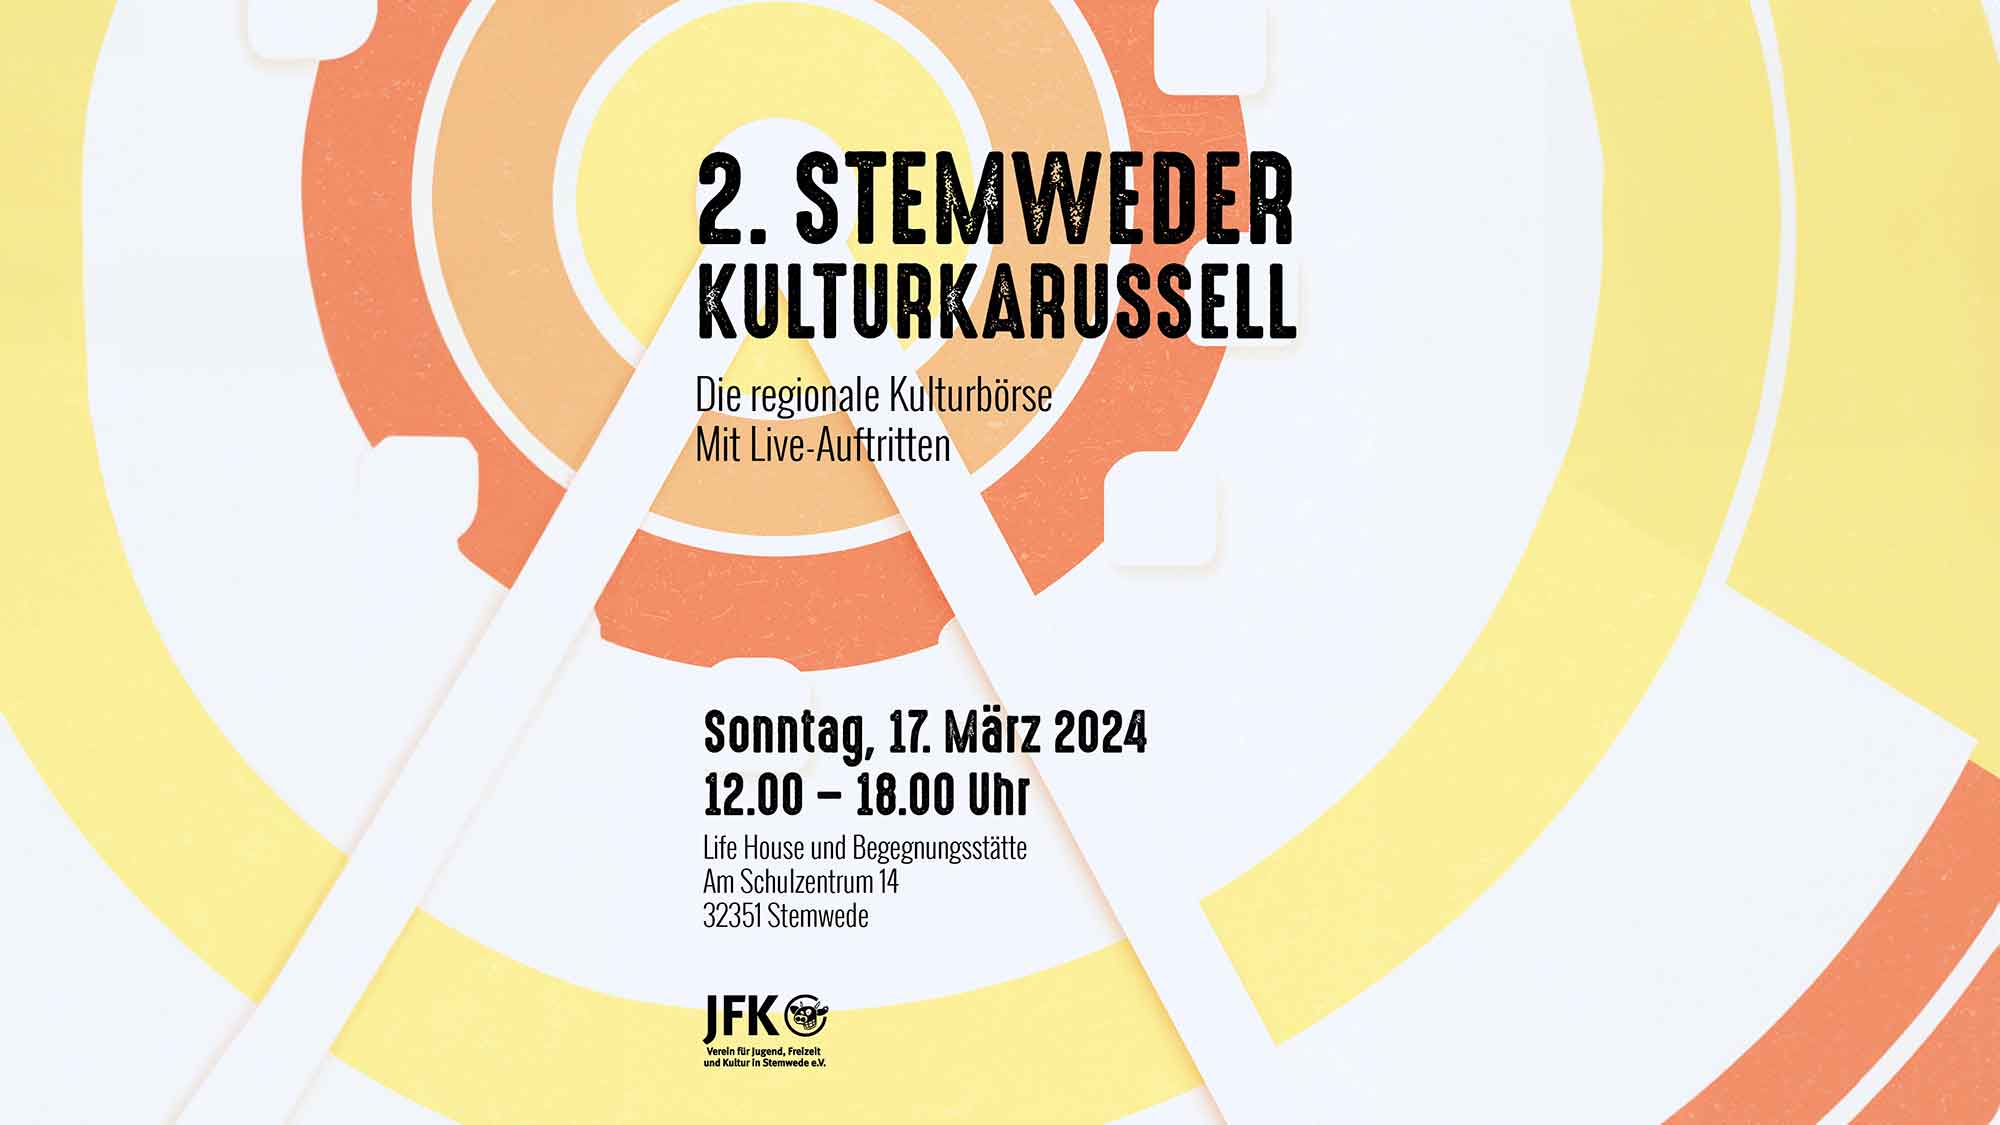 Bewerbung für das 2. Stemweder Kulturkarussell, regionale Kultur und Musikerbörse, 17. März 2024